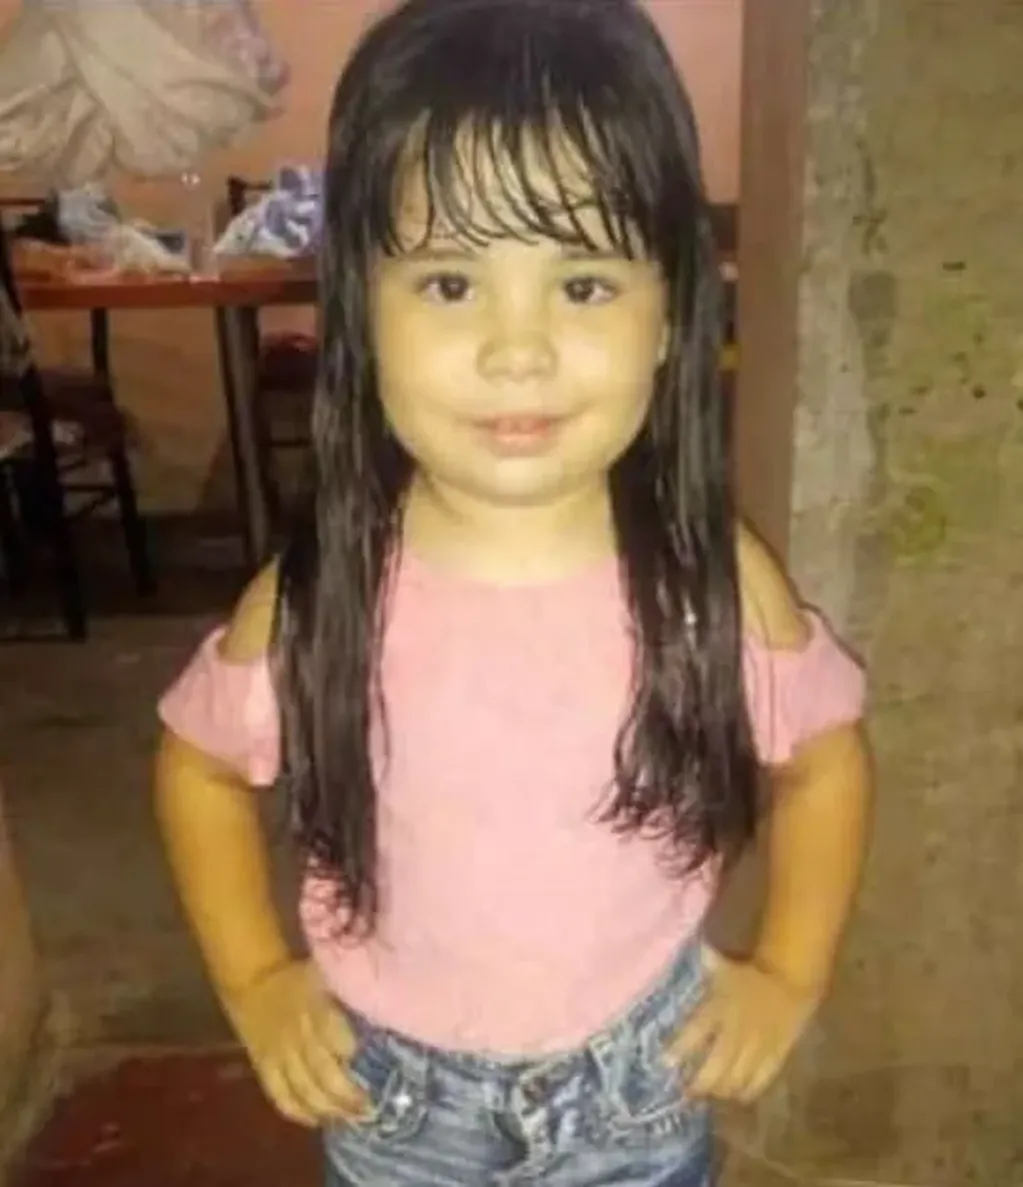 Agostina, de 4 años, era hija única. Falleció aplastada por un portón metálico. Gentileza: Diario de Cuyo